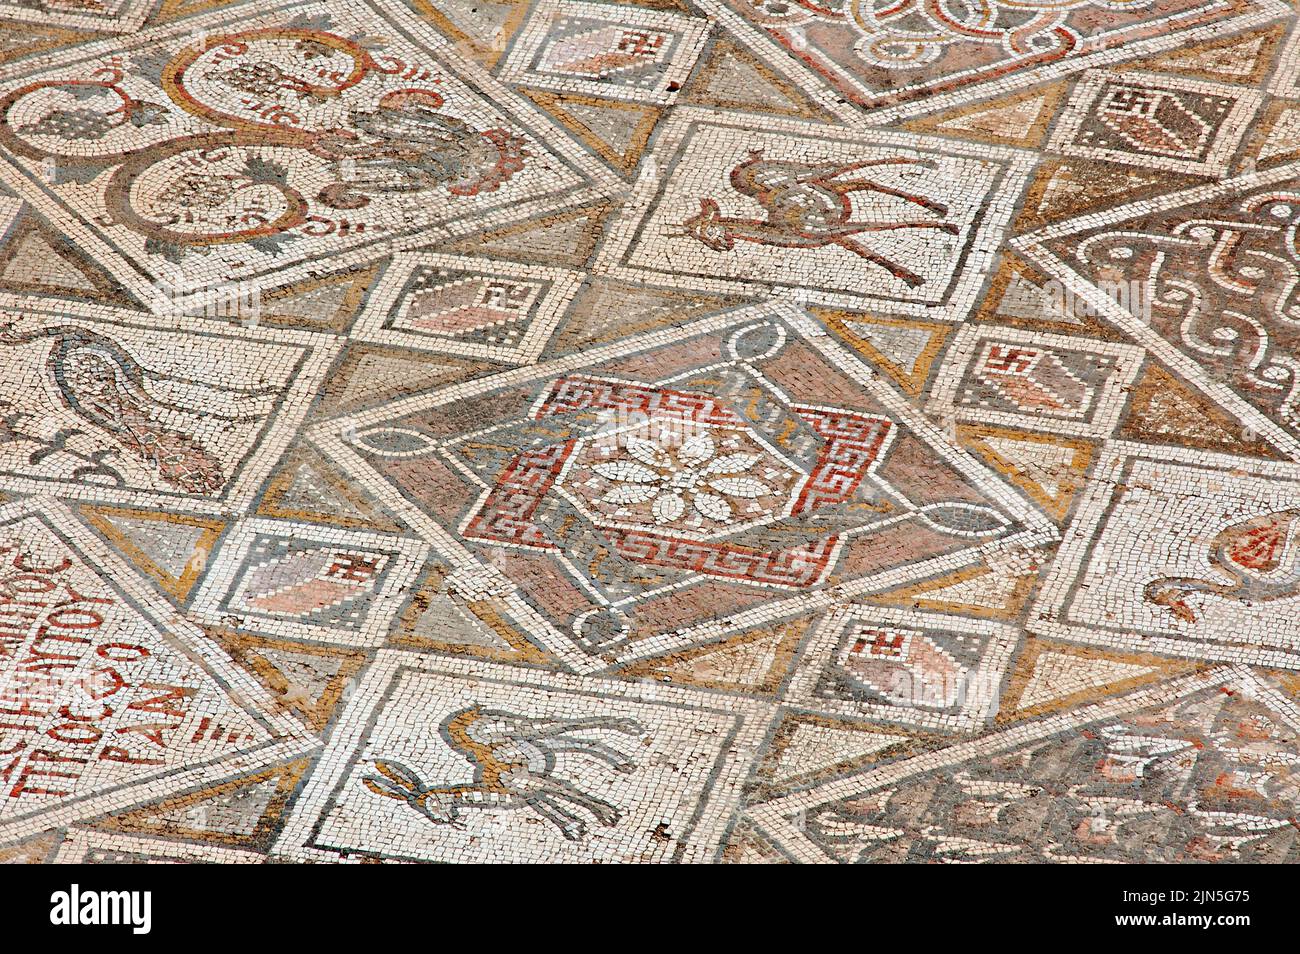 Jordania, sitio arqueológico de Jerash, mosaico Foto de stock